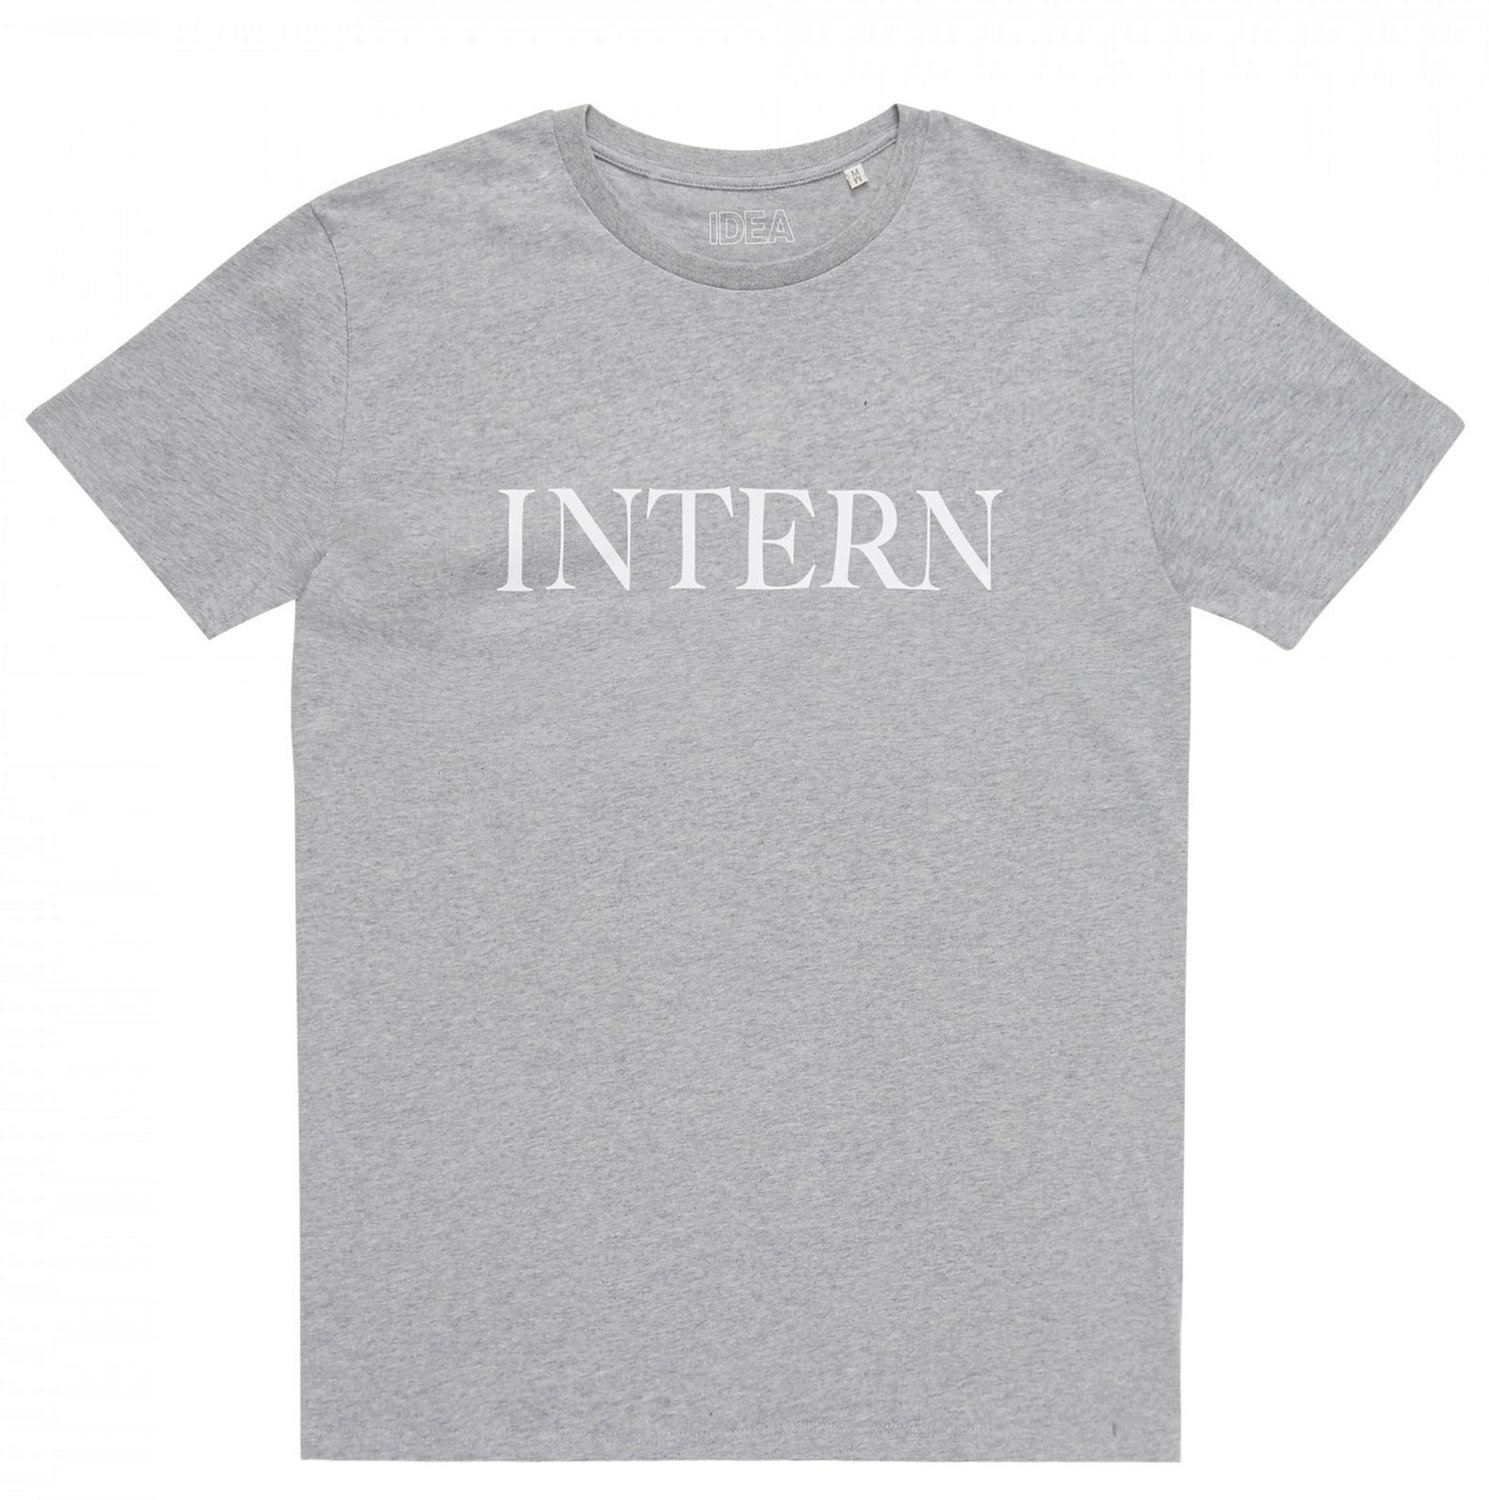 INTERN T-Shirt GREY